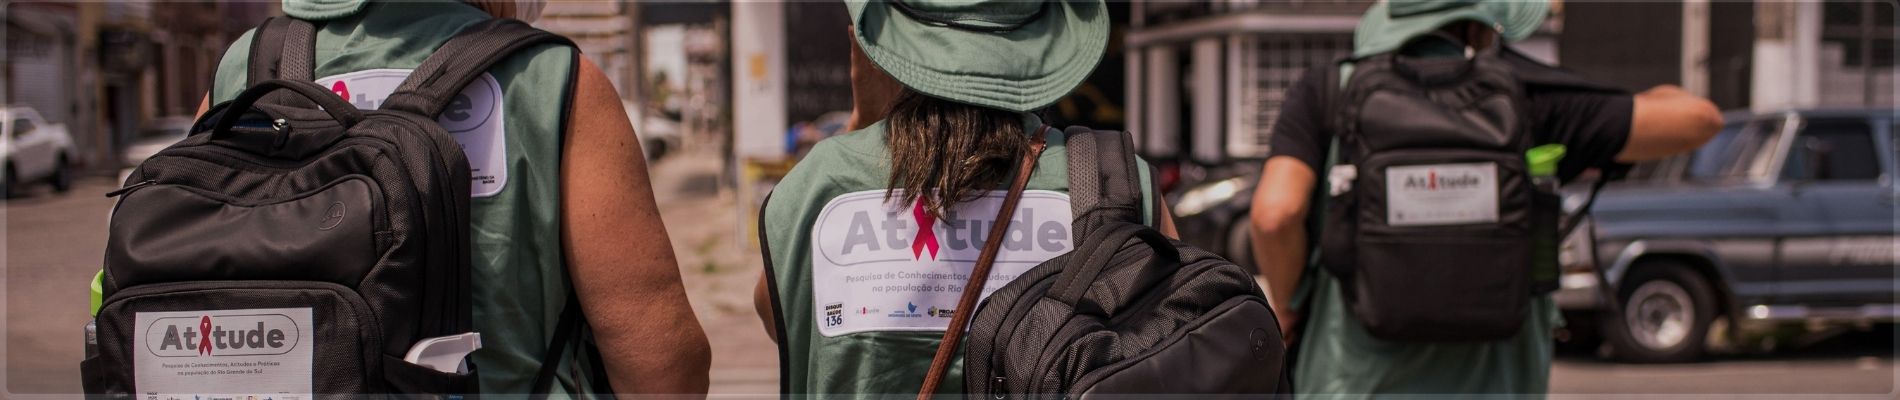 Projeto Atitude: Estudo conduzido pelo Hospital Moinhos de Vento, via PROADI-SUS, irá mapear os cuidados da população gaúcha em relação às Infecções Sexualmente Transmissíveis